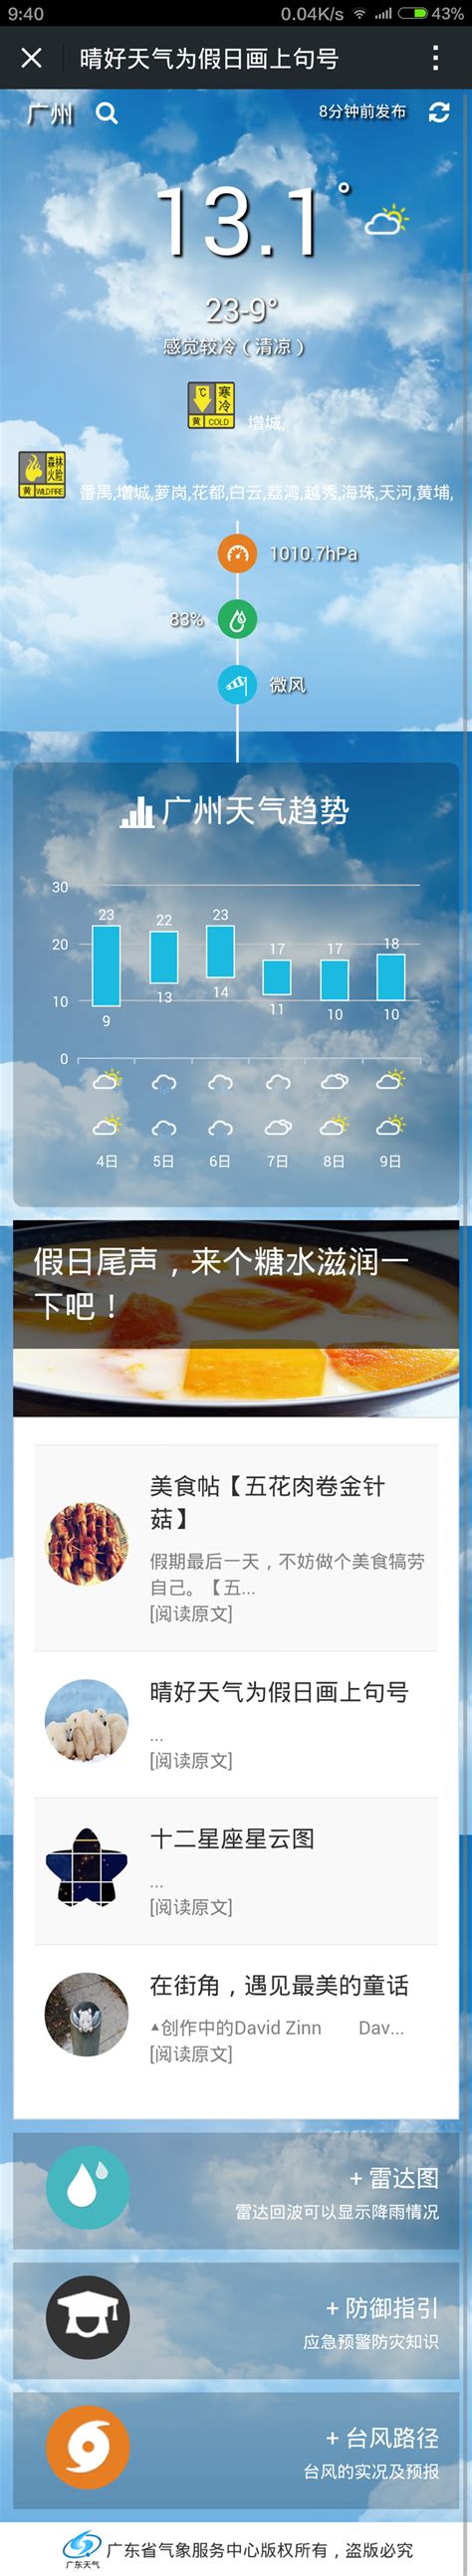 广东省气象局-省市气象局联合举行世界气象日开放活动 公众共享气象科普盛宴